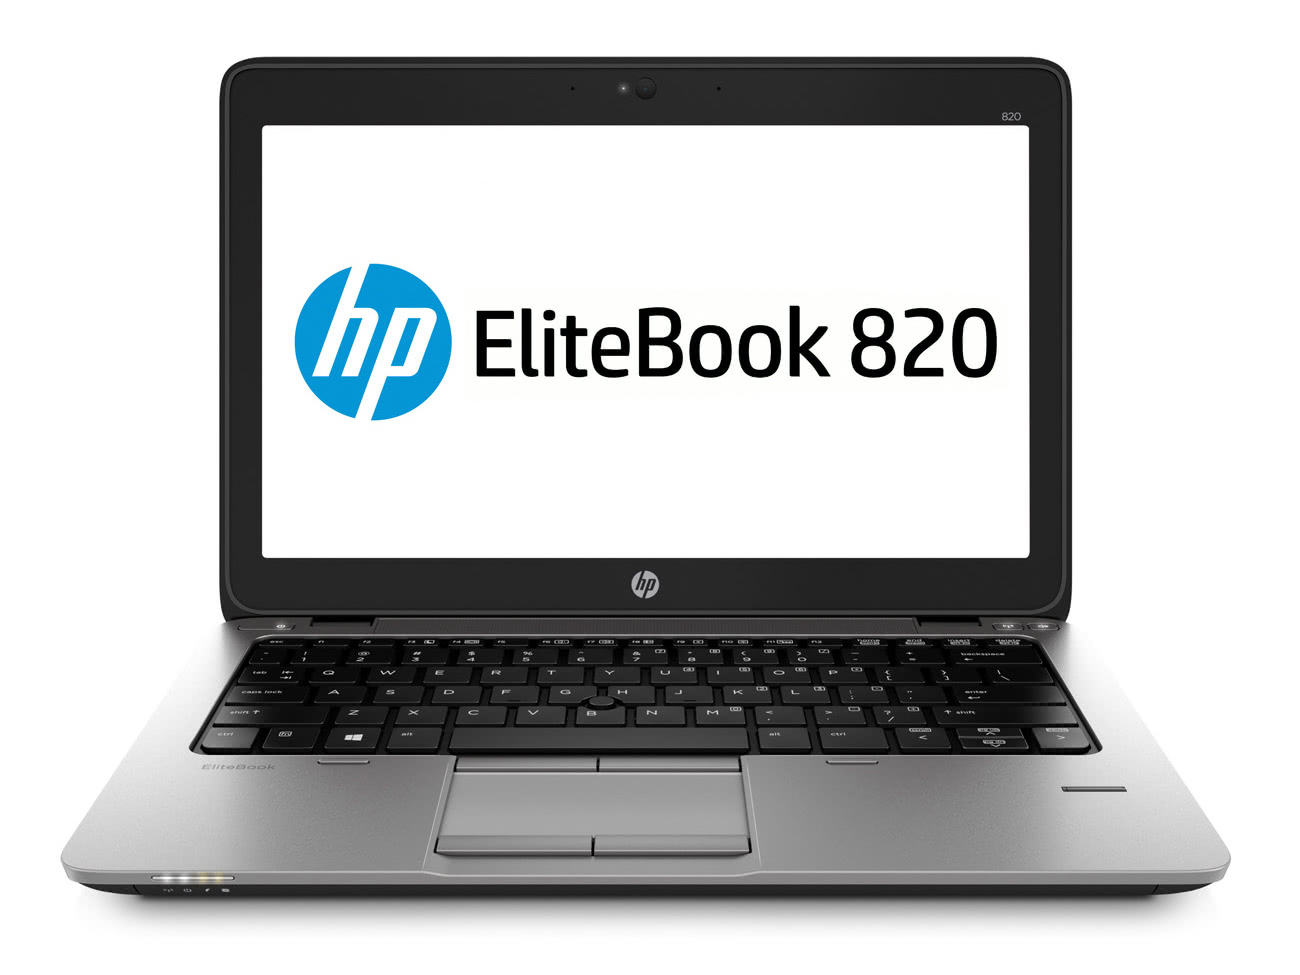 Laptop Hp Elitebook 820 G2, Intel Core I5-5300u 2.30ghz, 4gb Ddr3, 500gb Sata, 12.5 Inch, Webcam